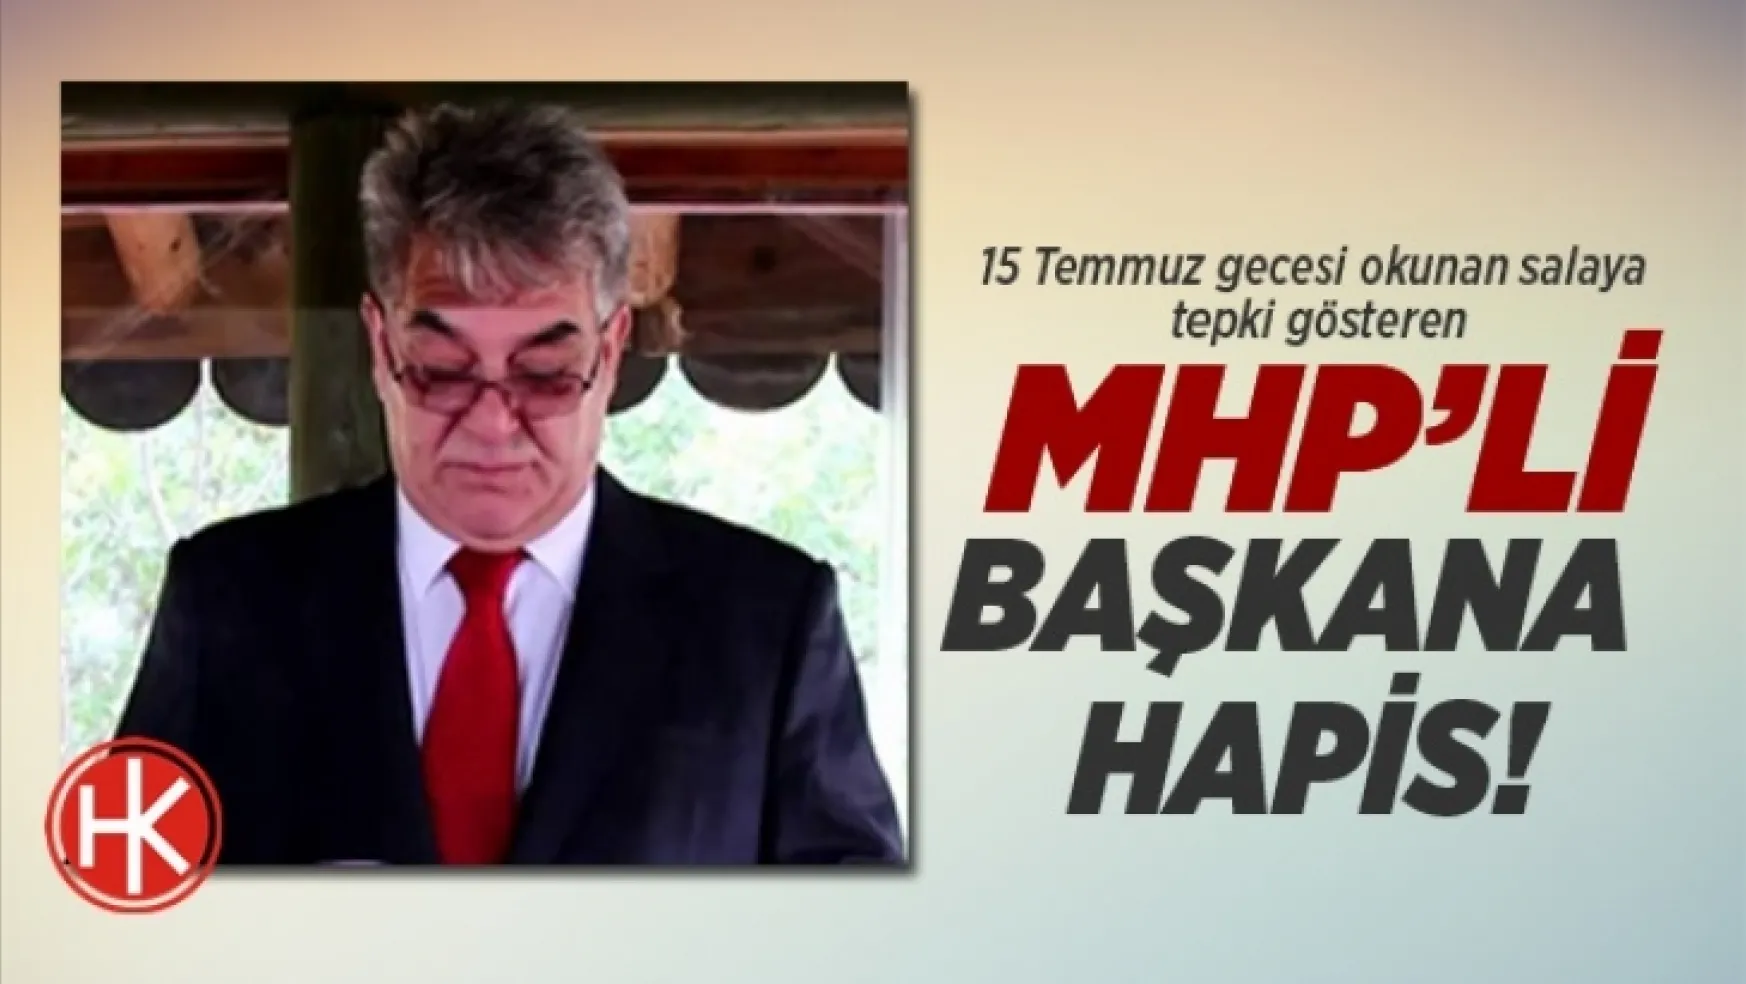 MHP'li başkana 3 yıl 9 ay 14 gün hapis!